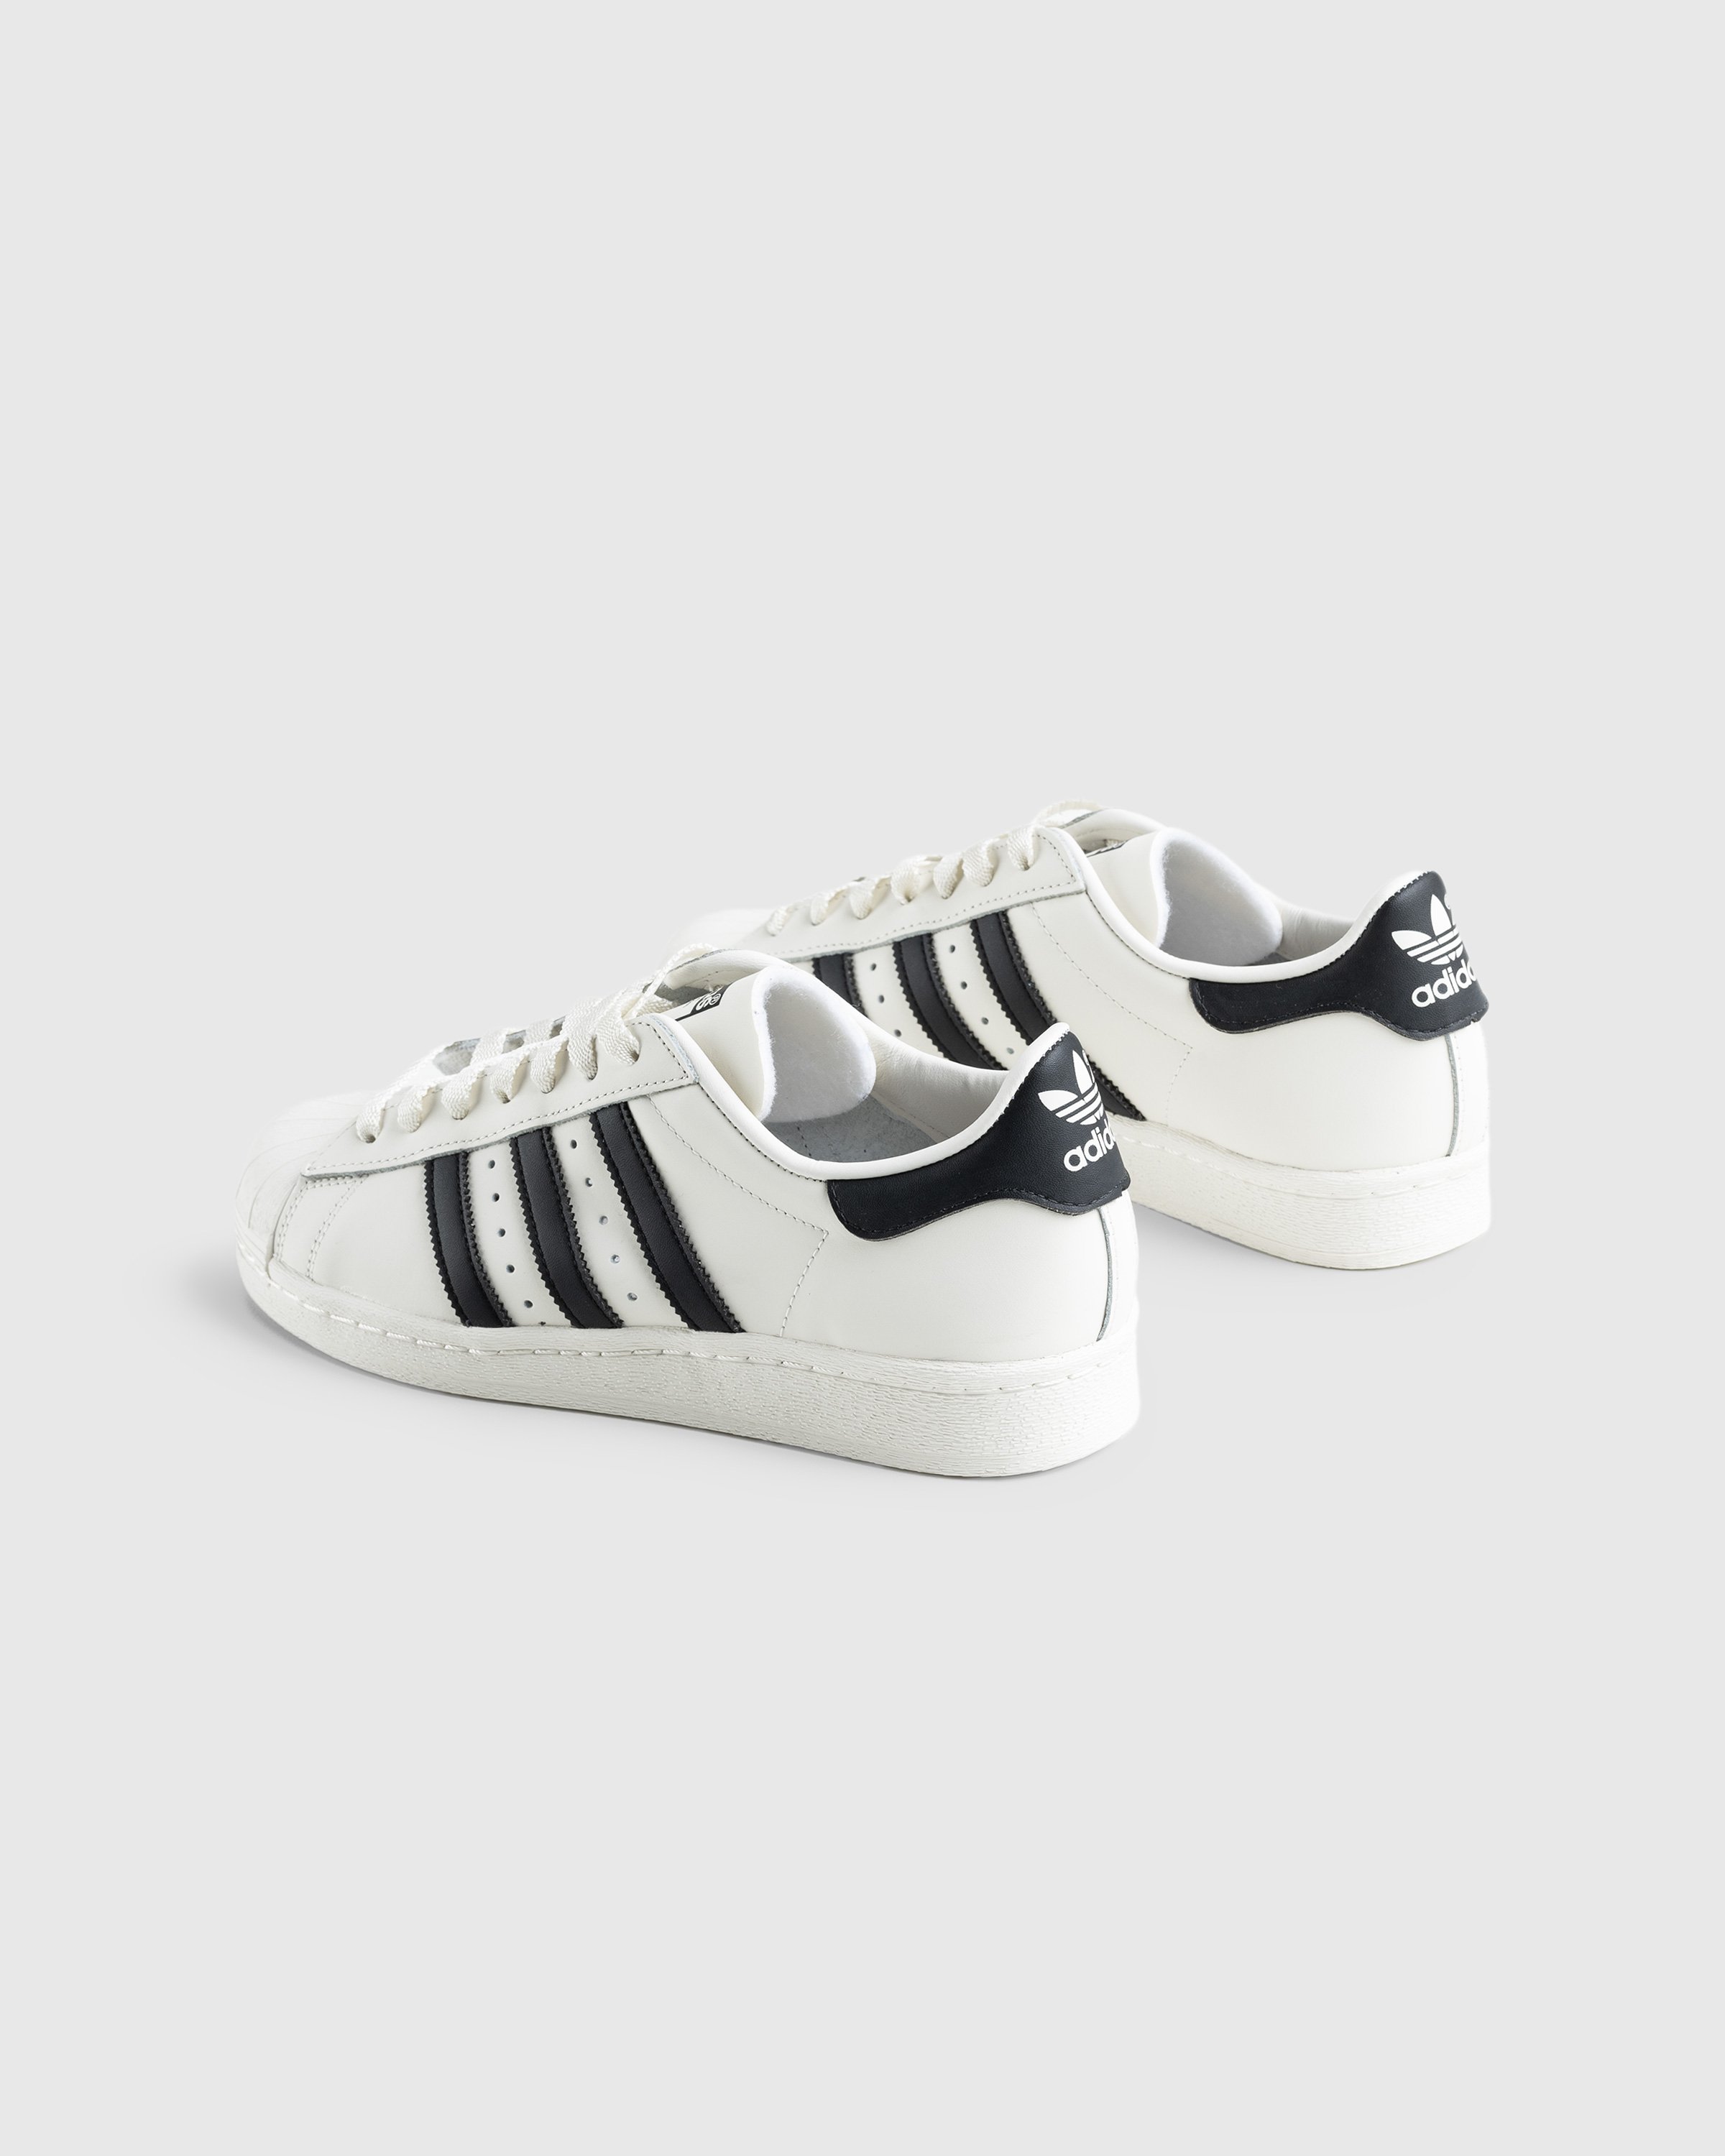 Adidas - Superstar 82 White/Black - Footwear - White - Image 4